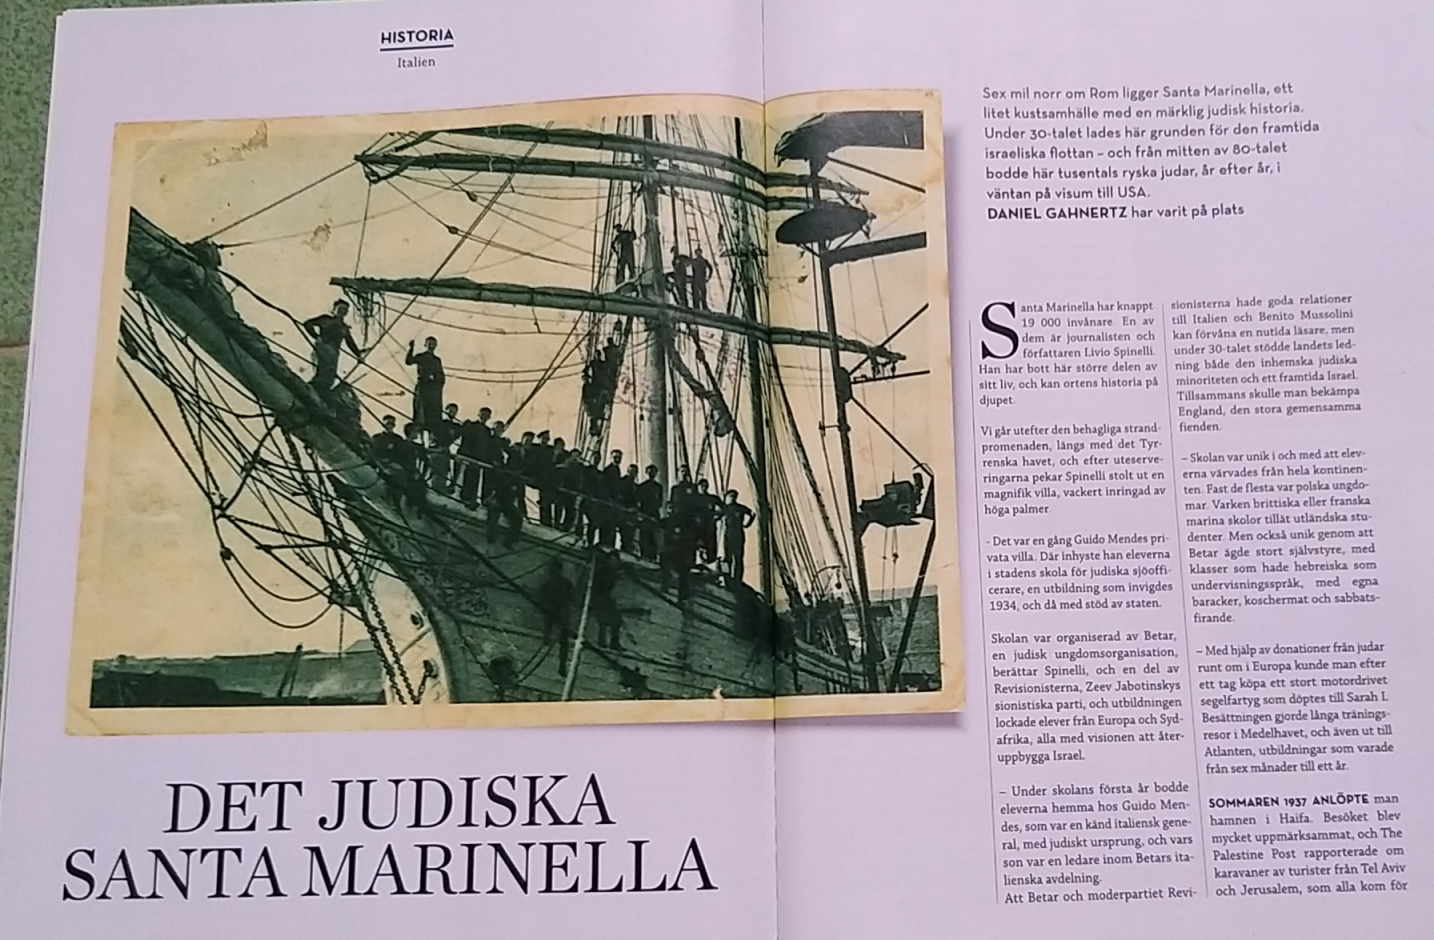 JUDISK – la più importante rivista ebraica di Svezia parla di Santa Marinella in occasione della giornata della memoria